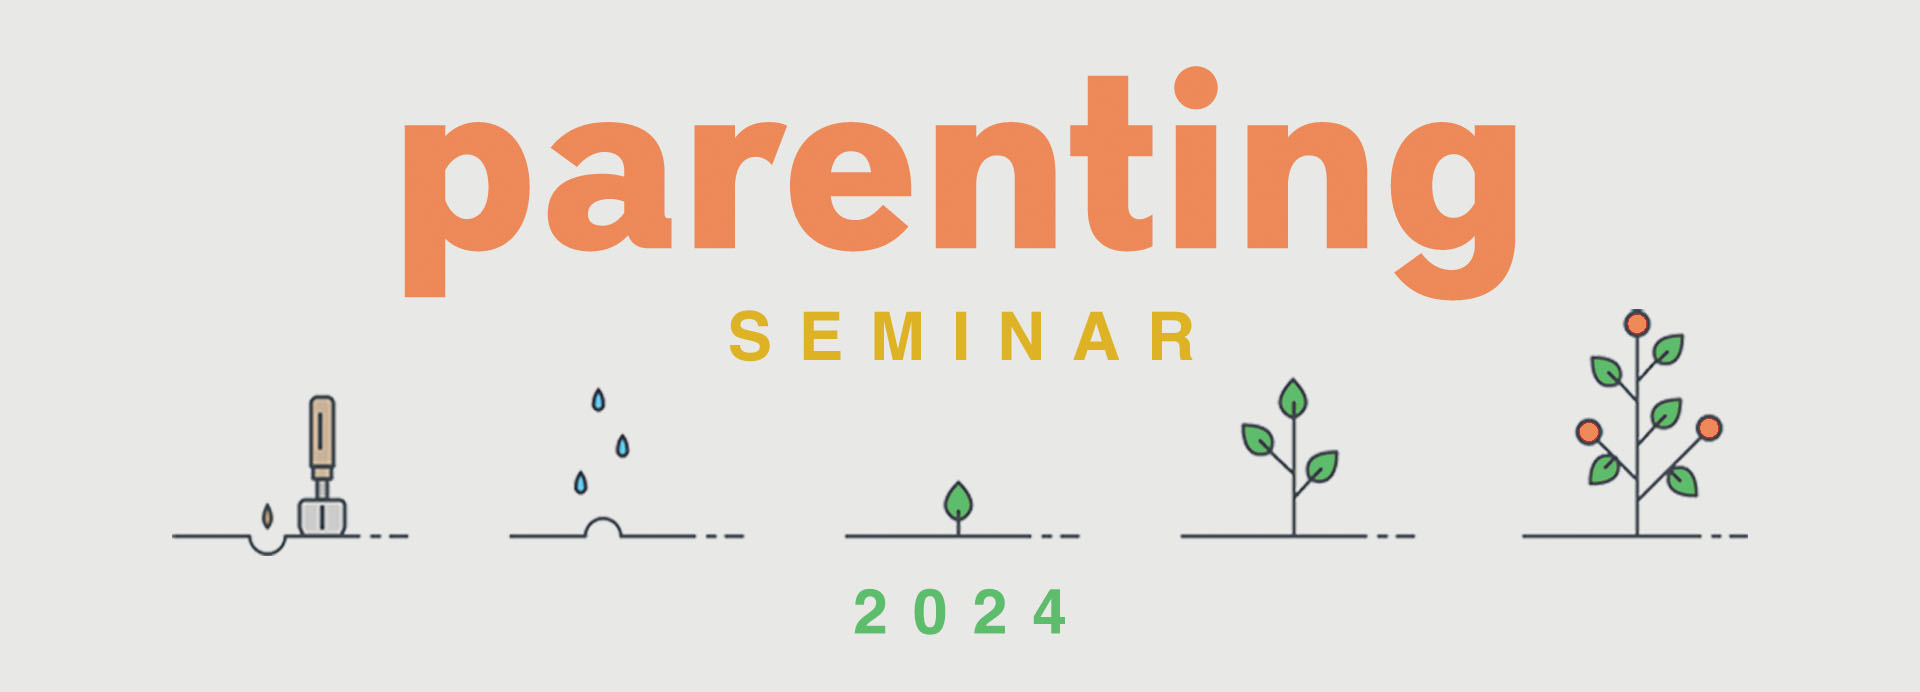 Parenting Seminar 2024